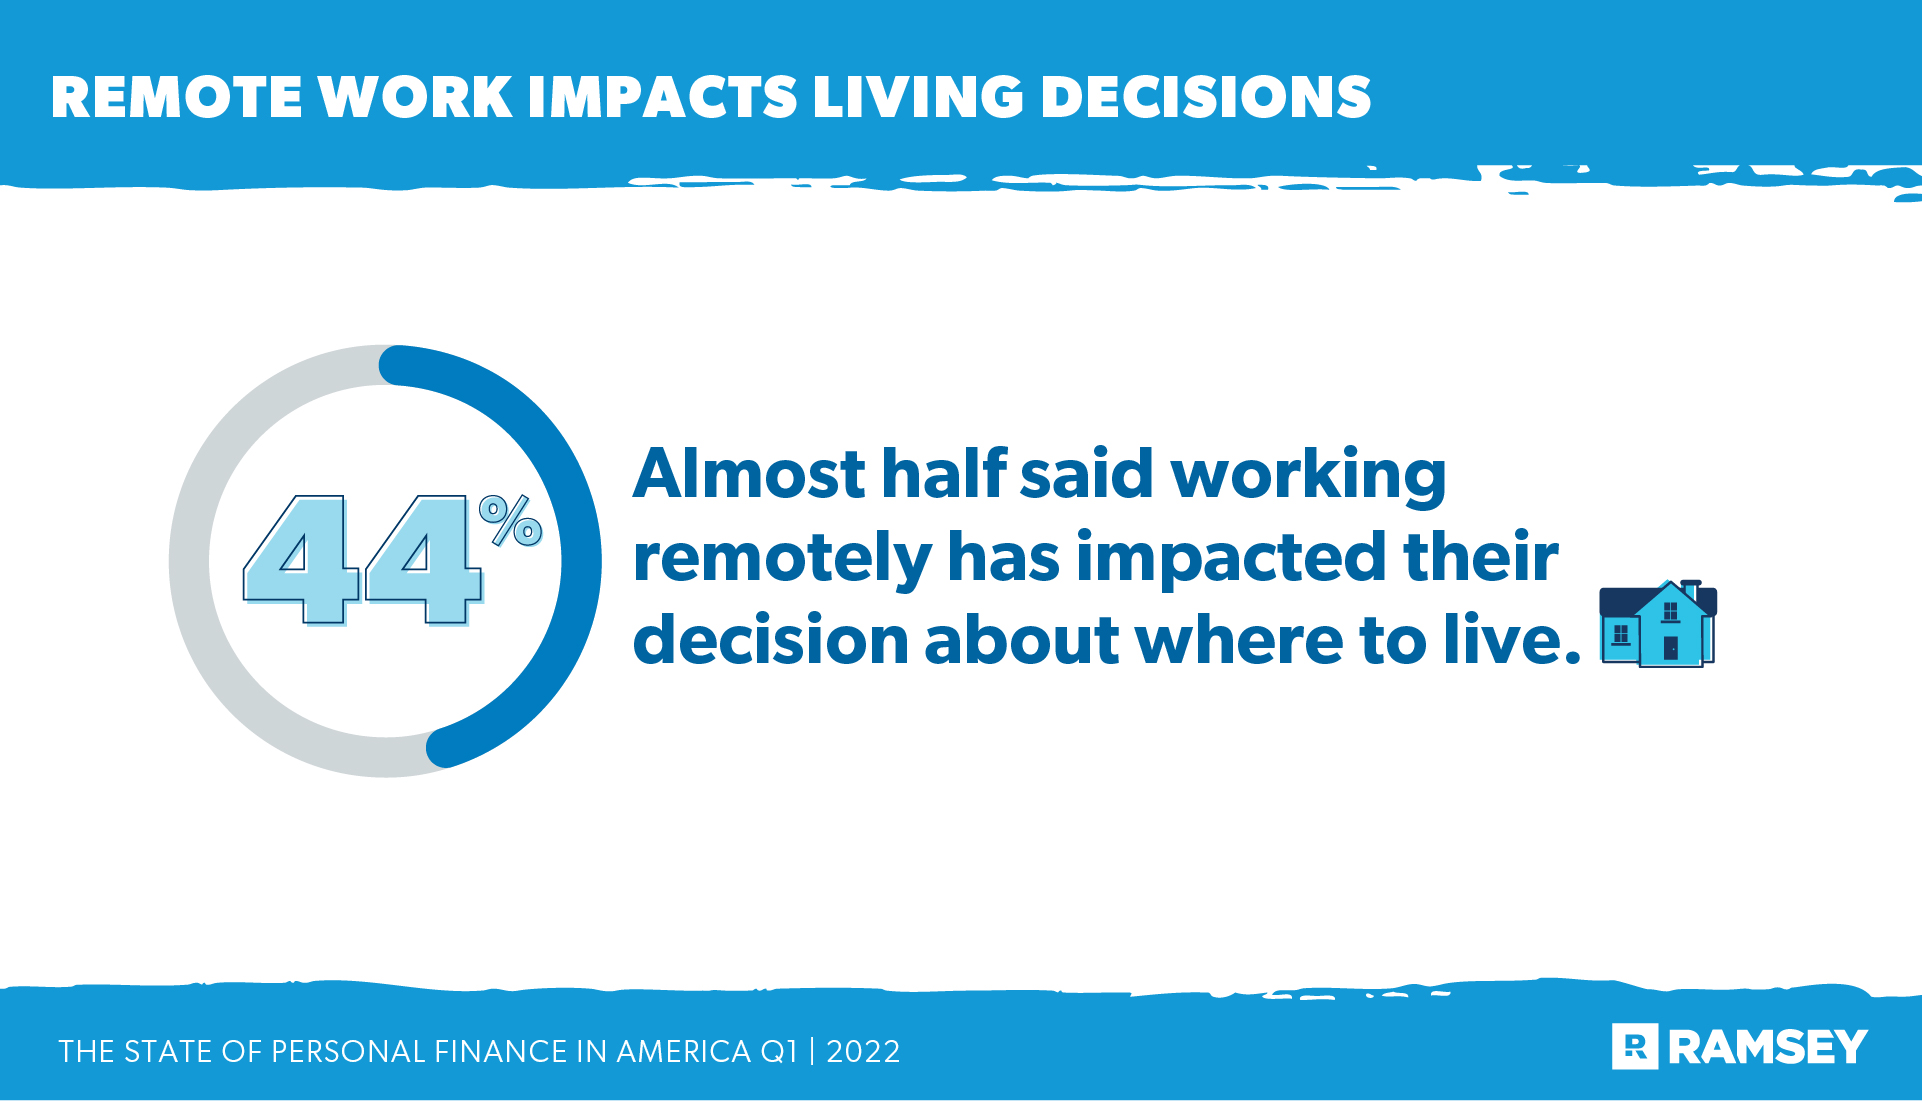 le travail à distance a un impact sur les décisions de vie